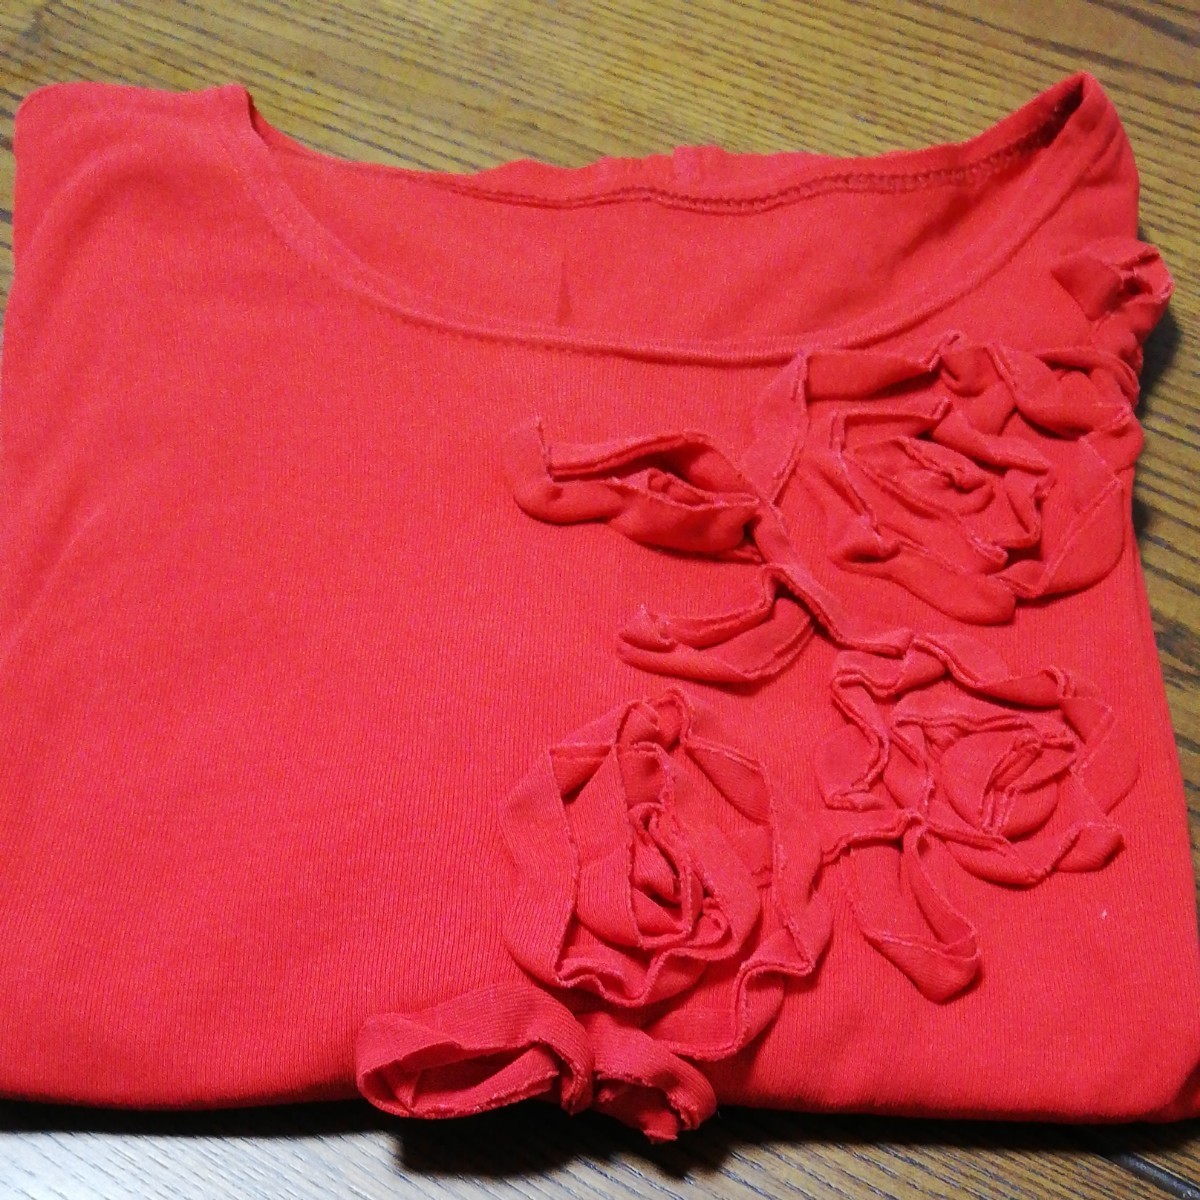 花柄おしゃれTシャツ社交ダンス練習着体操普段着にも着回せる半袖シャツ赤系に花柄つきTシャツサイズ記載なしレディースTシャツ半袖中古